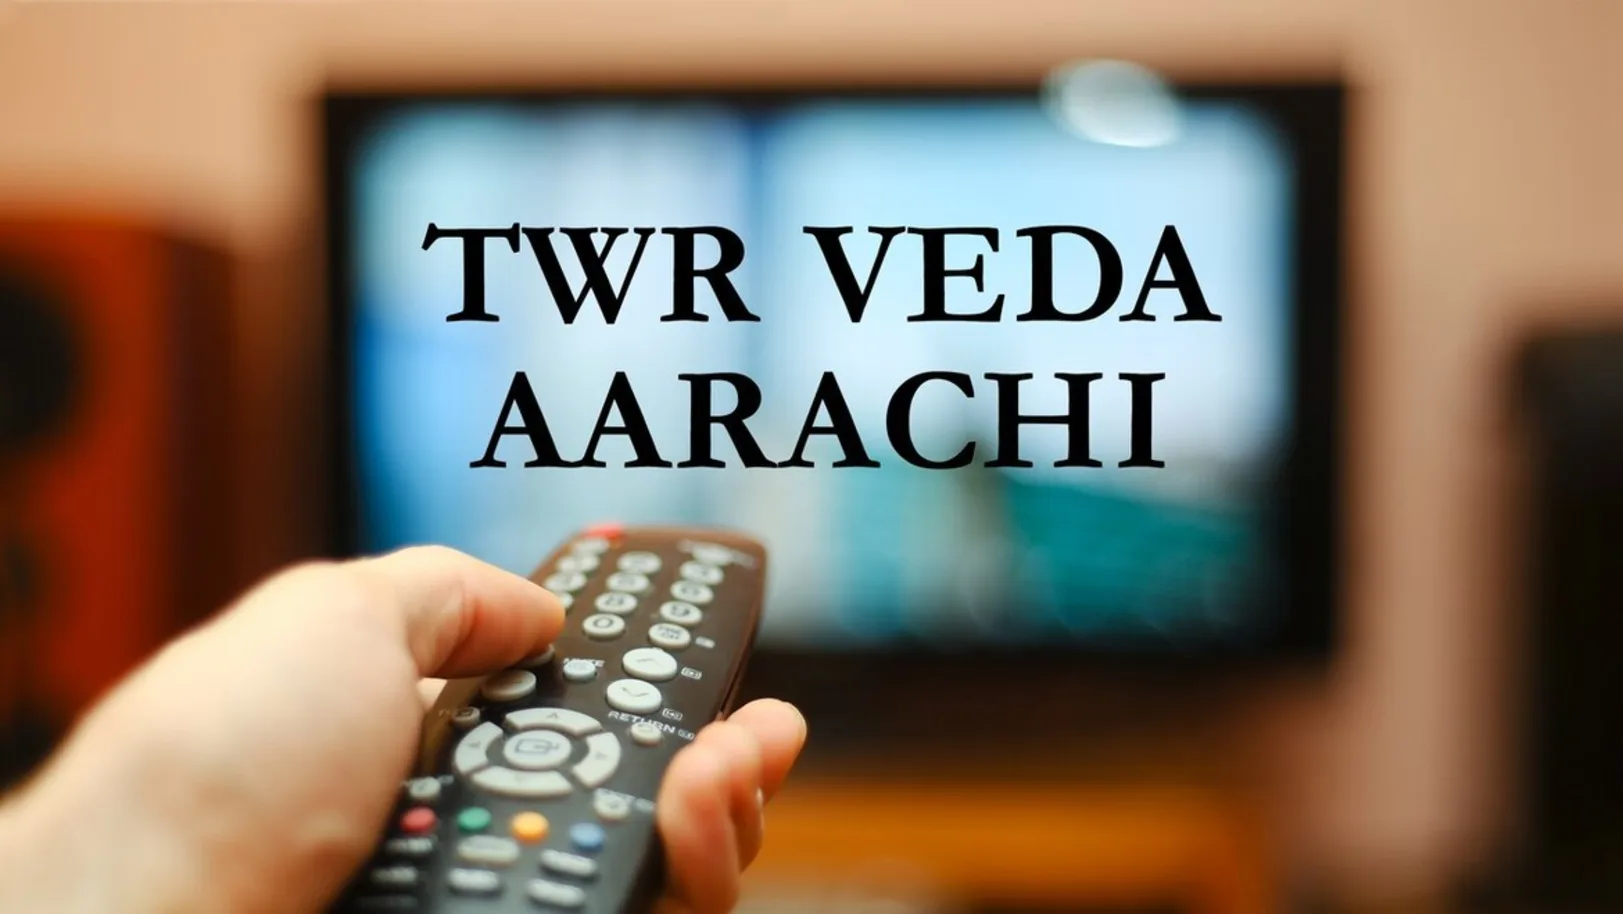 TWR Veda Aarachi Streaming Now On Zee Tamil HD